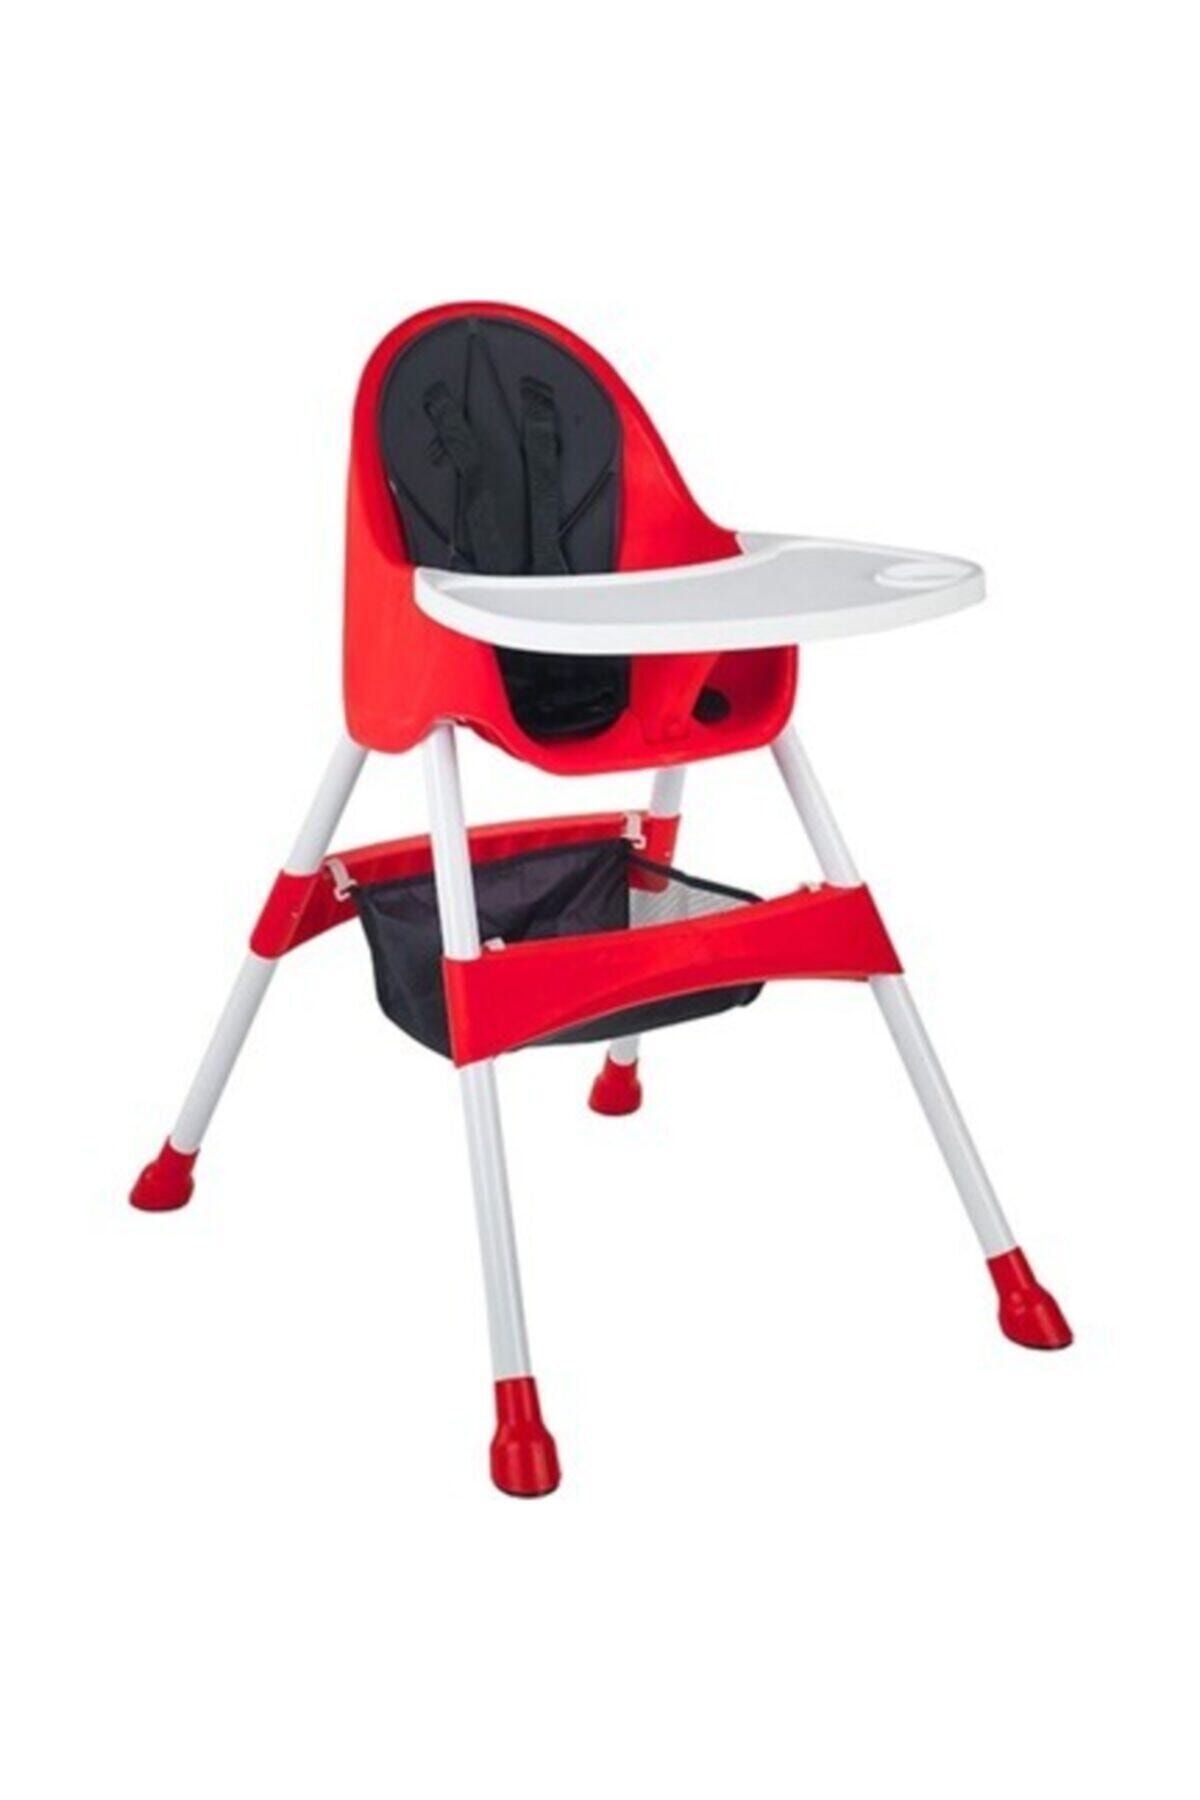 Babyhope Royal Mama Sandalyesi Ekonomik Mama Masası Portatif Yemek Masa-kırmızı Bh-7001